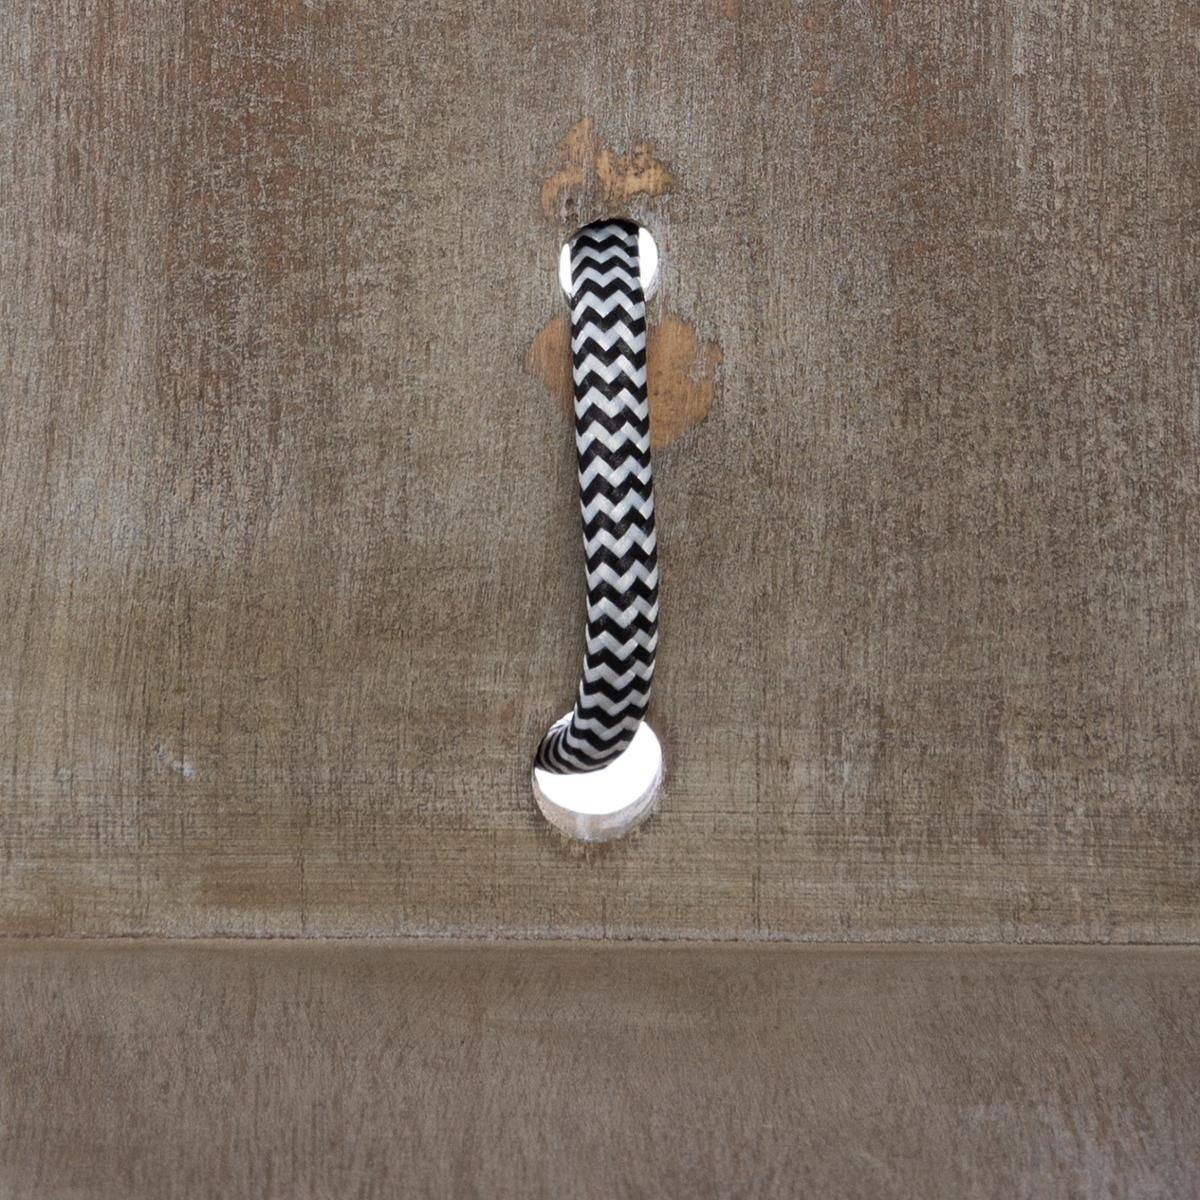 Stojak na żarówkę dekoracyjną CAJA, 25 cm, kabel czarny